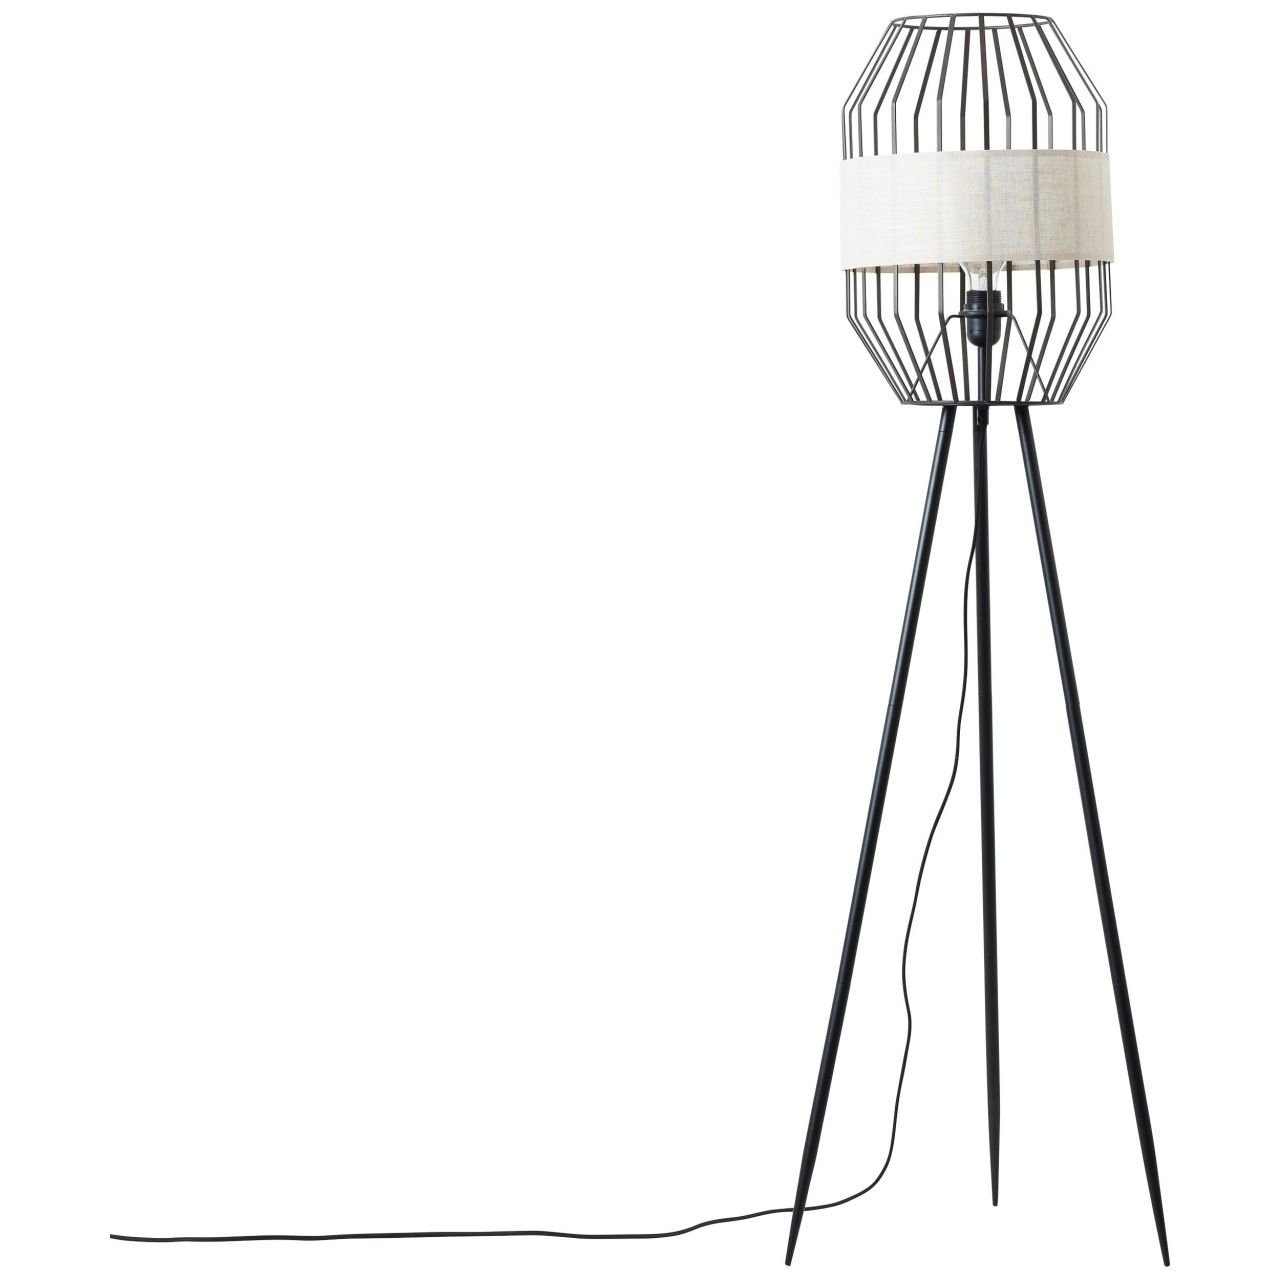 40W Standleuchte 1x Brilliant Lampe, dreibeinig E27, schwarz/natur, A60, Slope Slope, Stehlampe